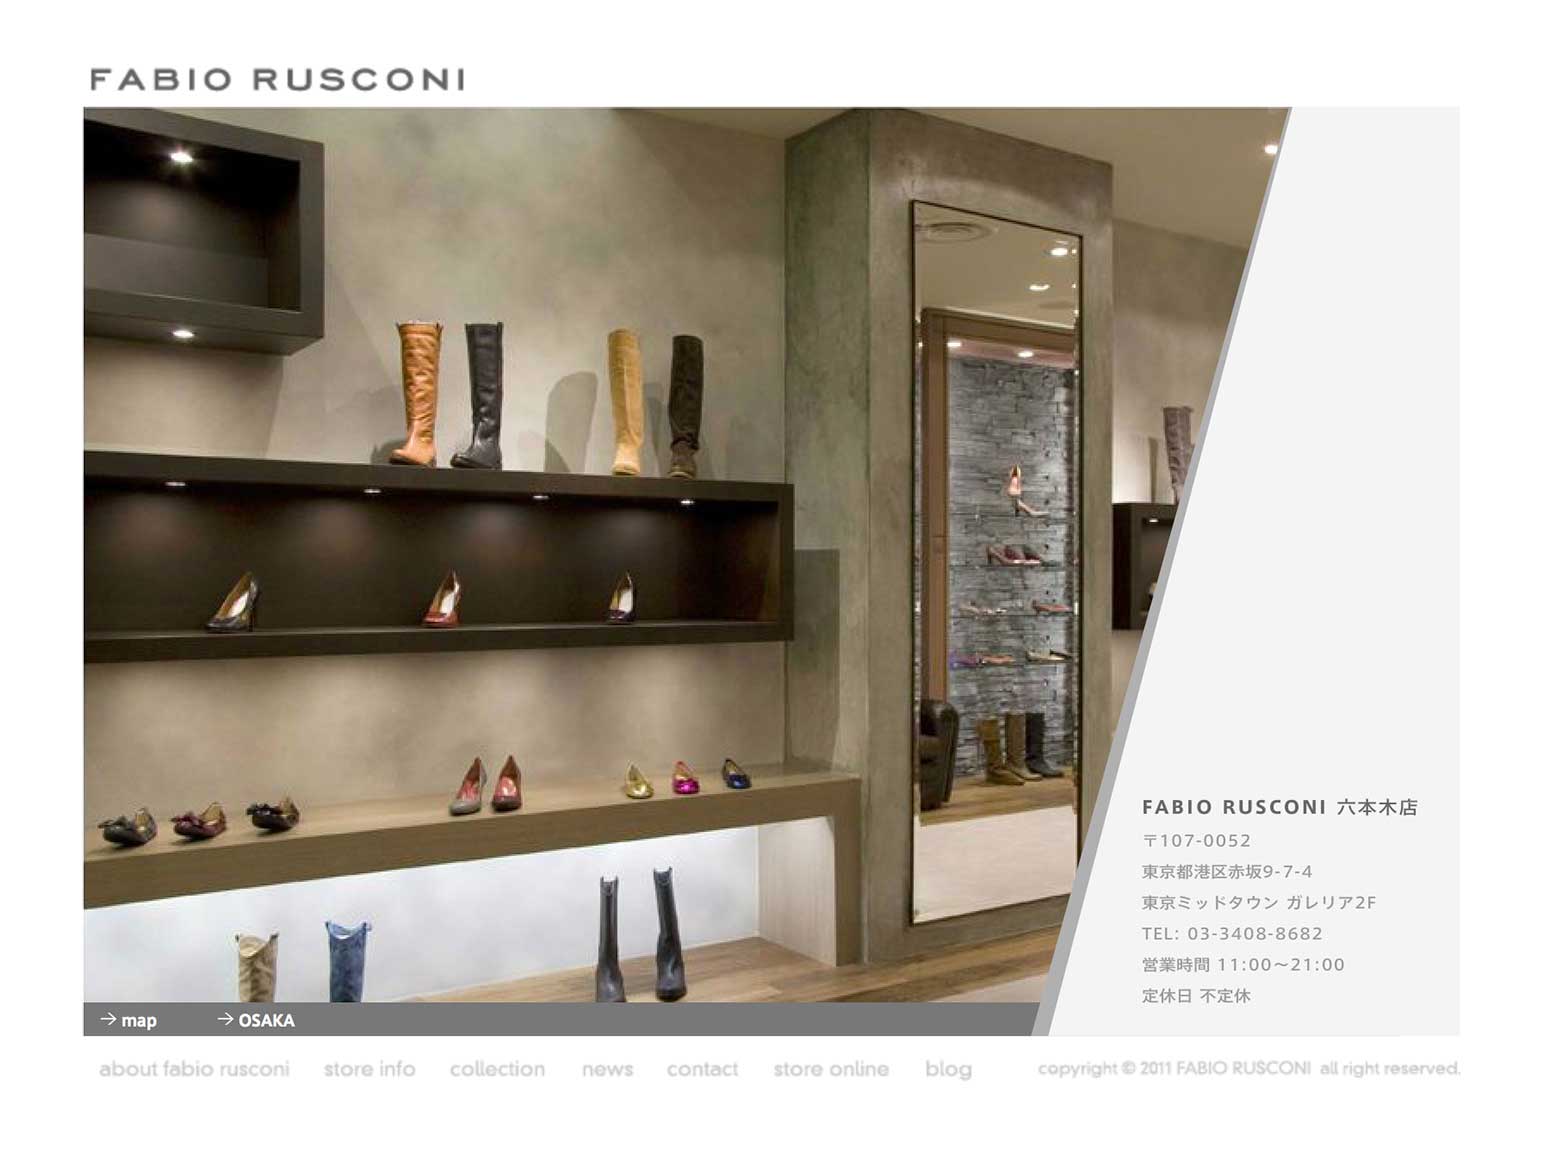 Fabio Rusconi Official Site